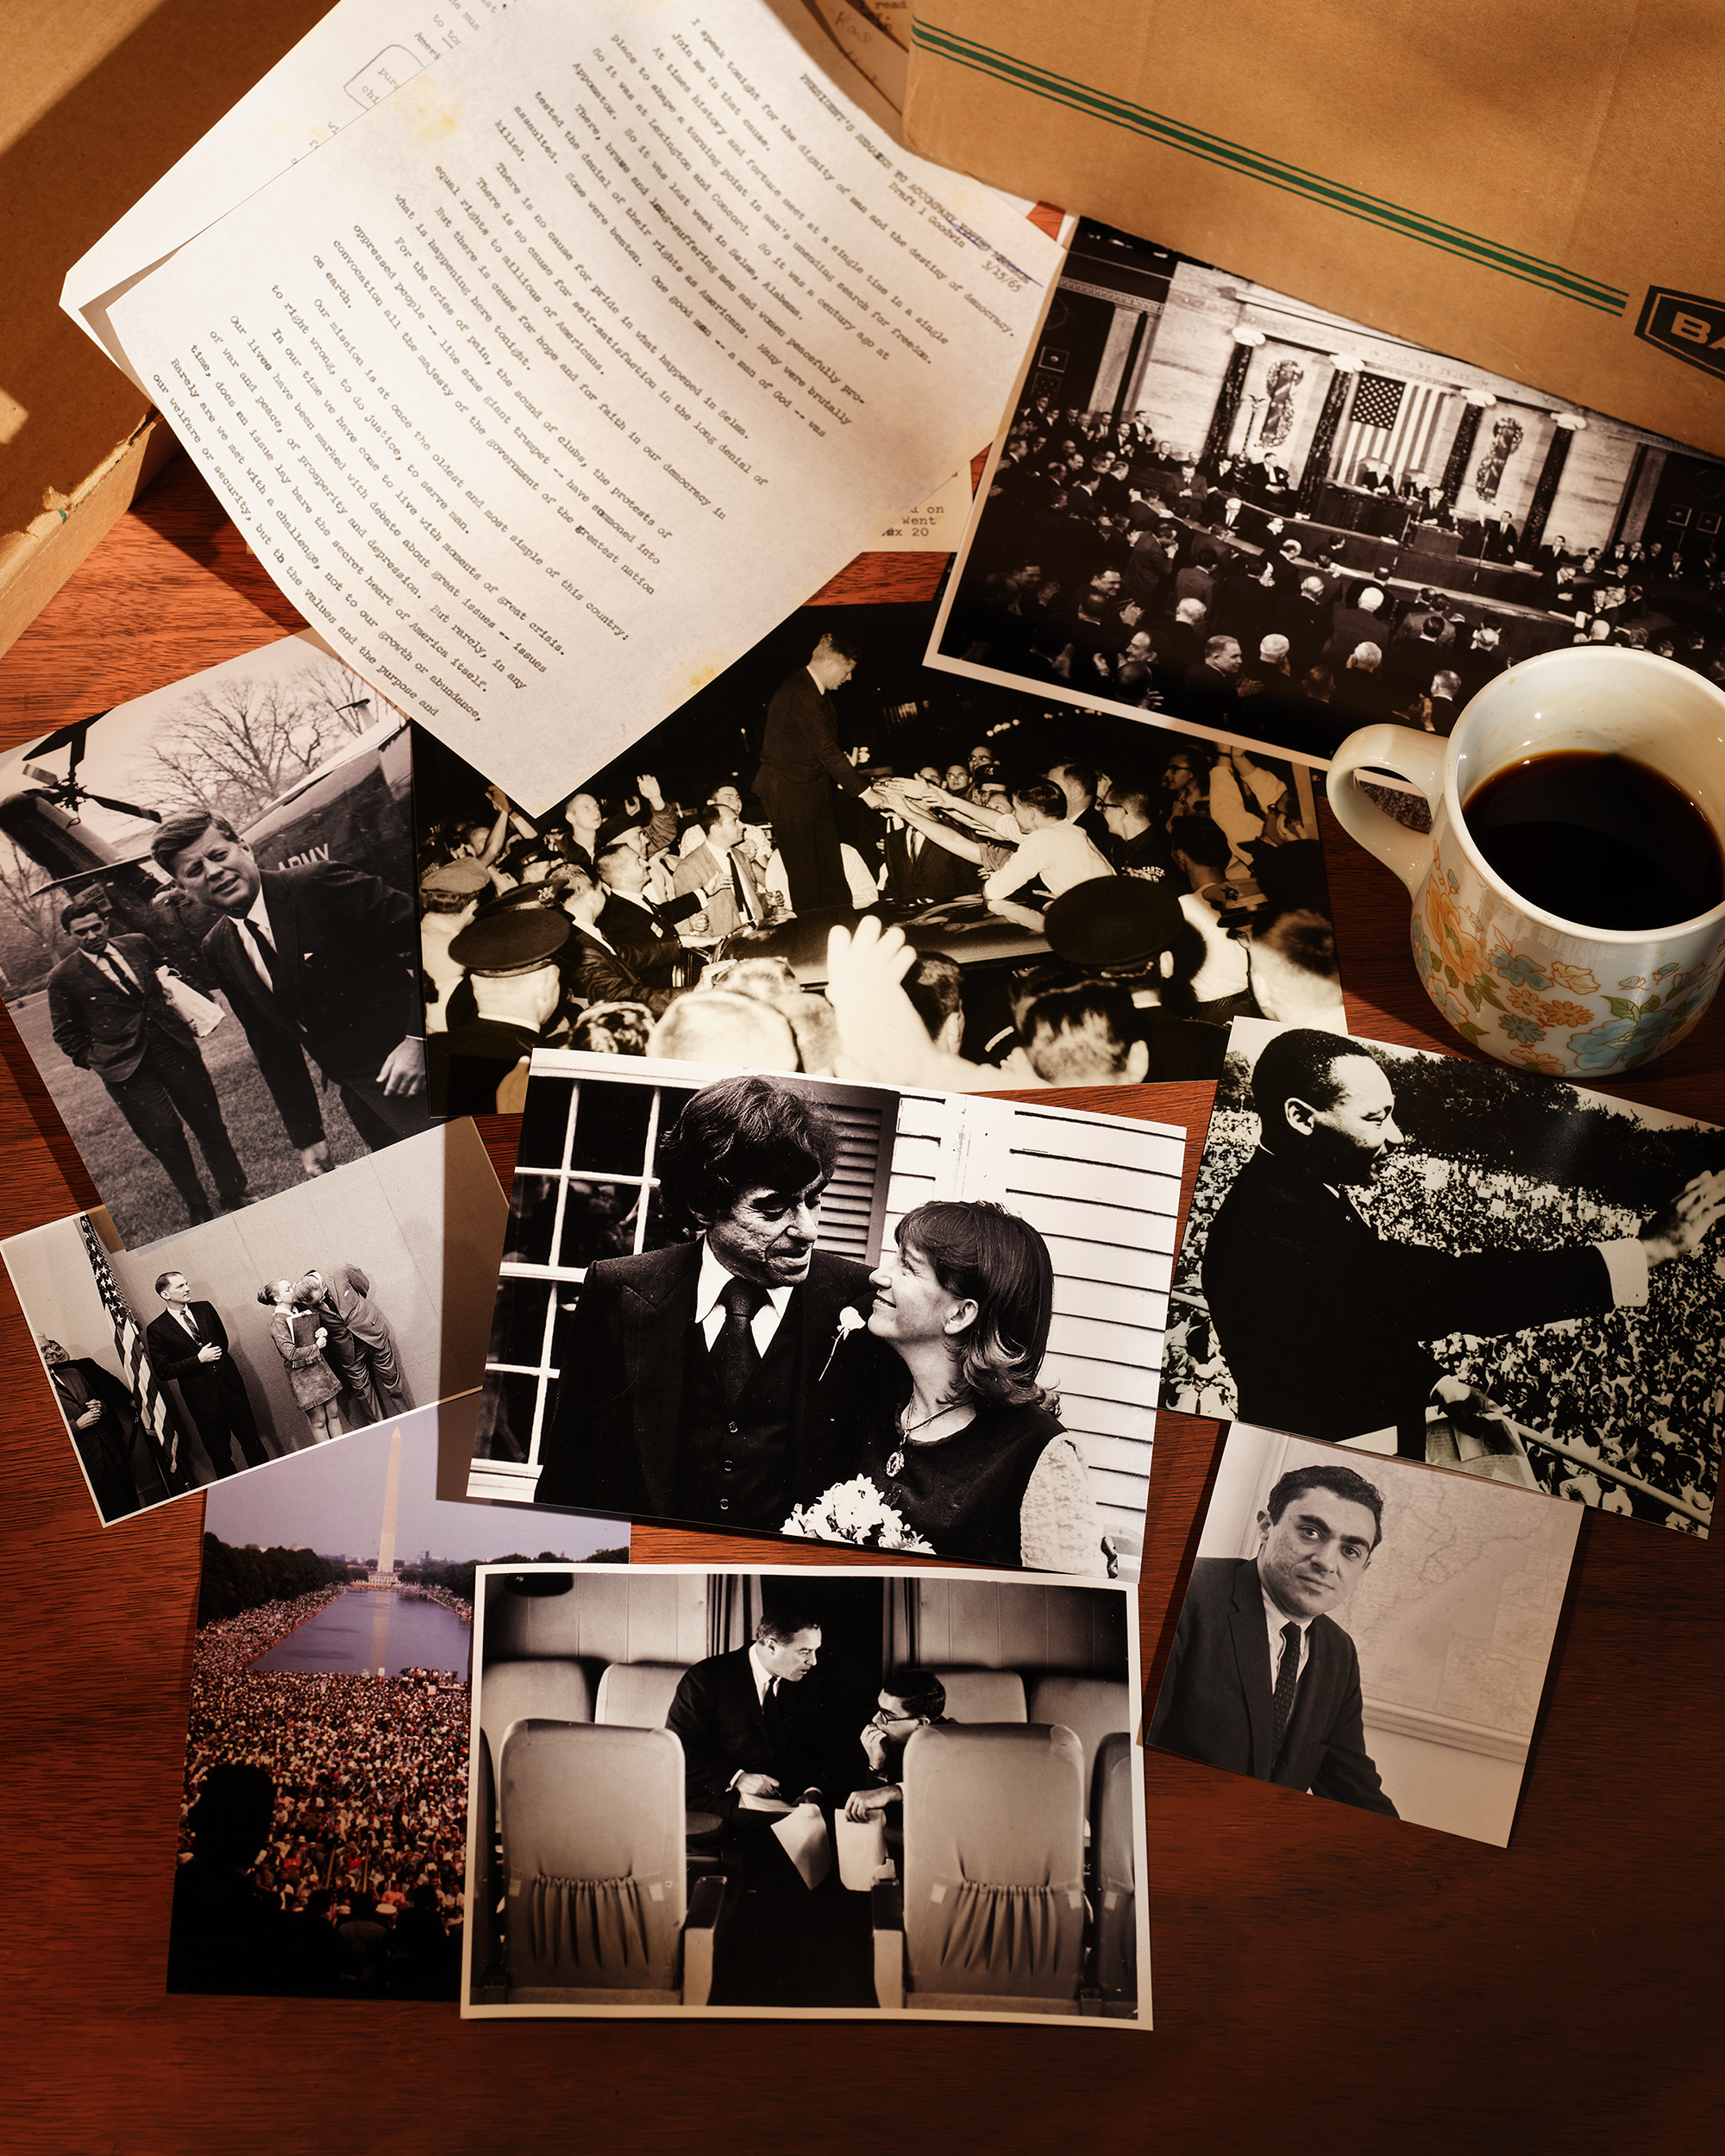 Mehrere alte Bilder und Dokumente neben einem braunen Karton und einer Tasse Kaffee